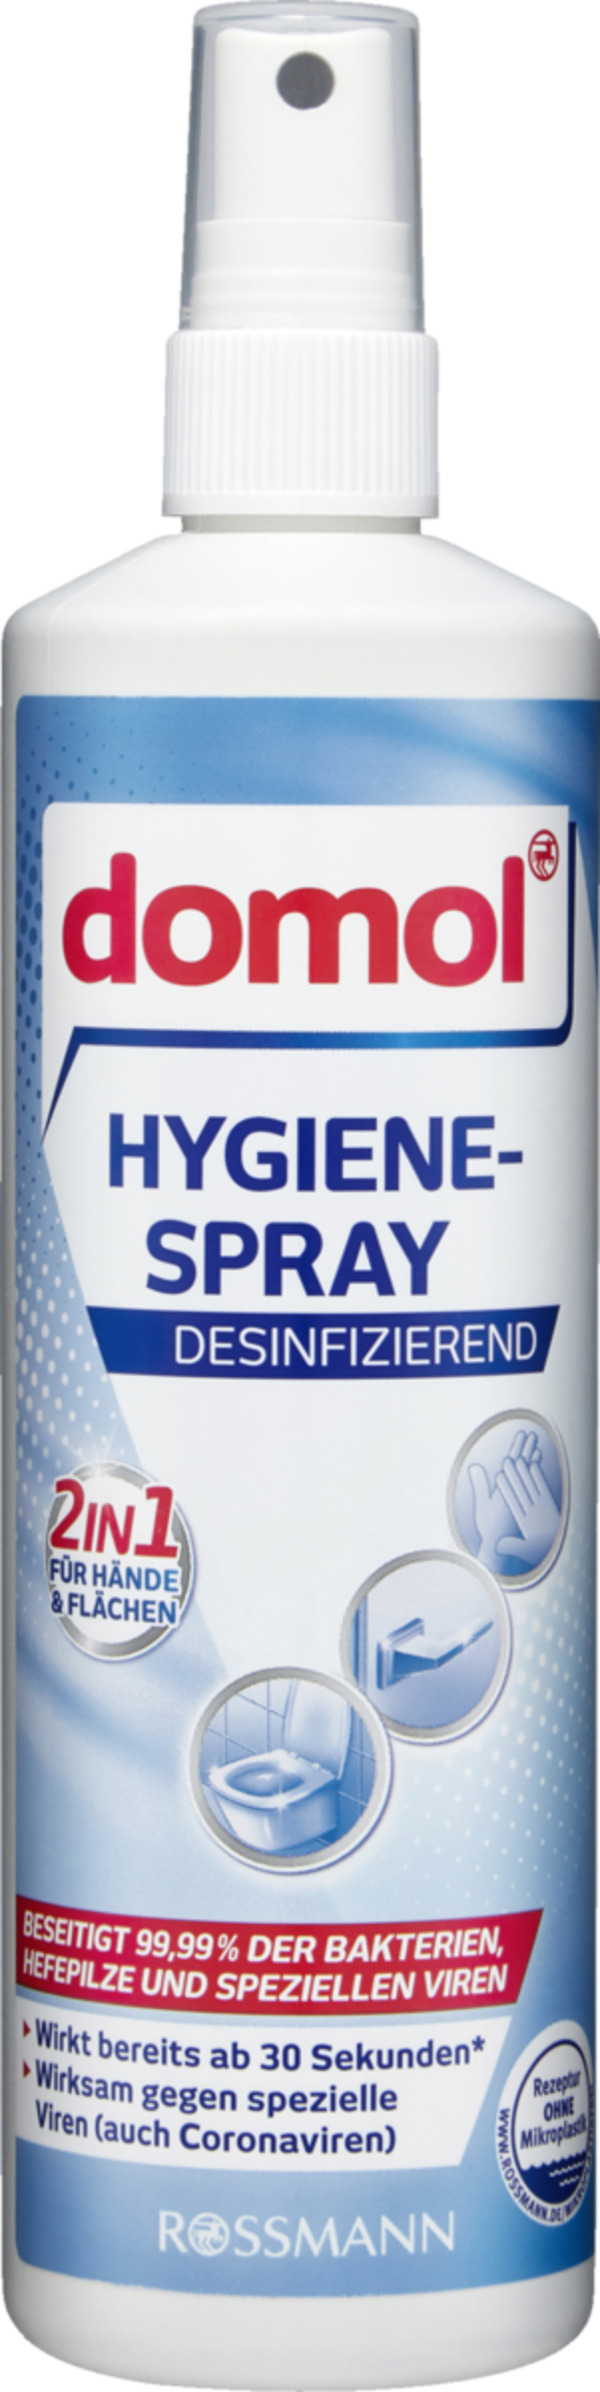 Bild 1 von domol             Hygiene-Spray